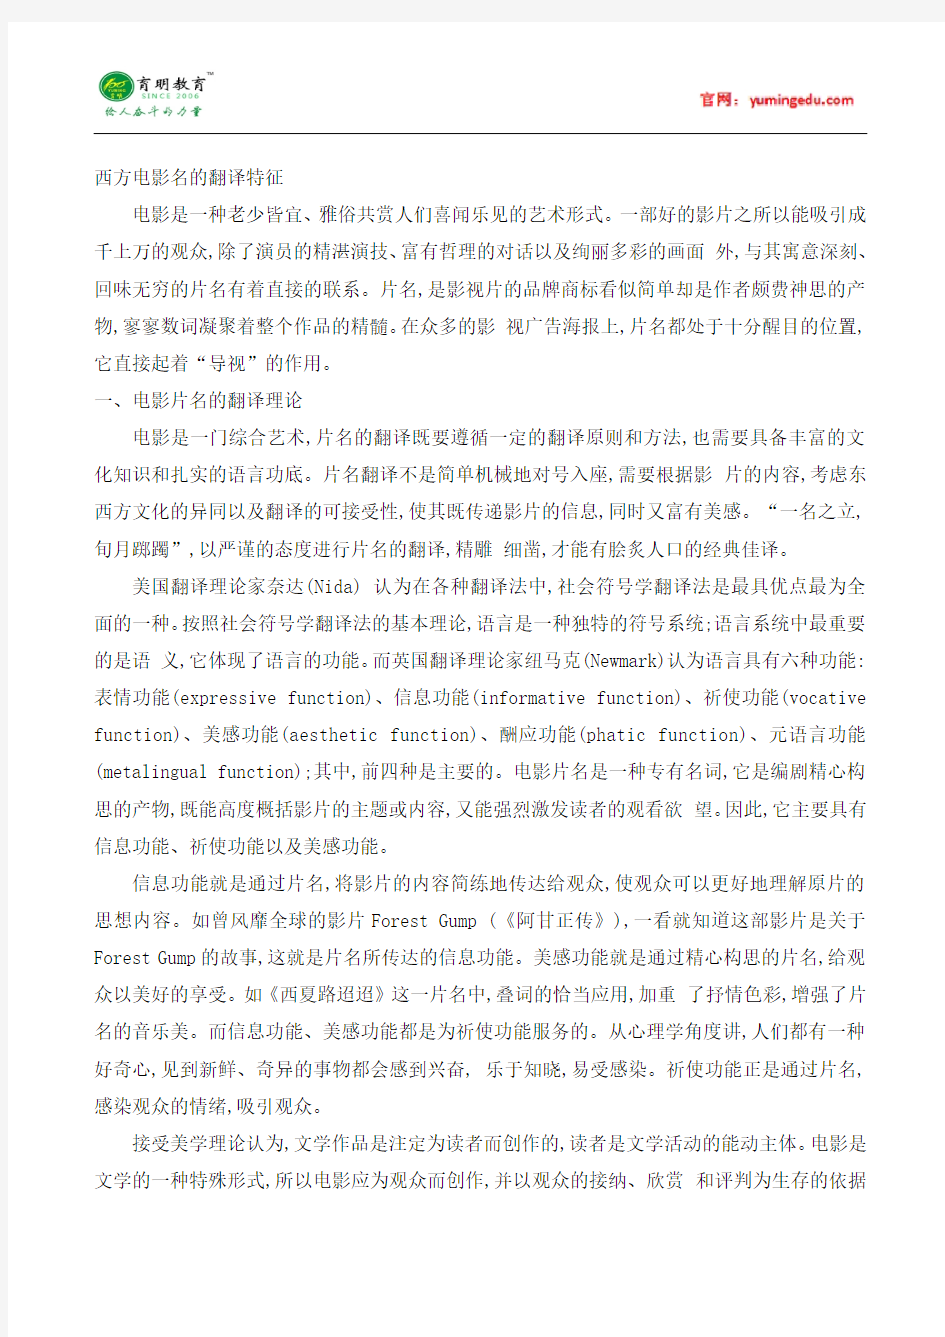 2016年中国石油大学(北京)MTI汉语写作与百科知识历年考研真题,考研参考书,考研大纲,学姐重点笔记